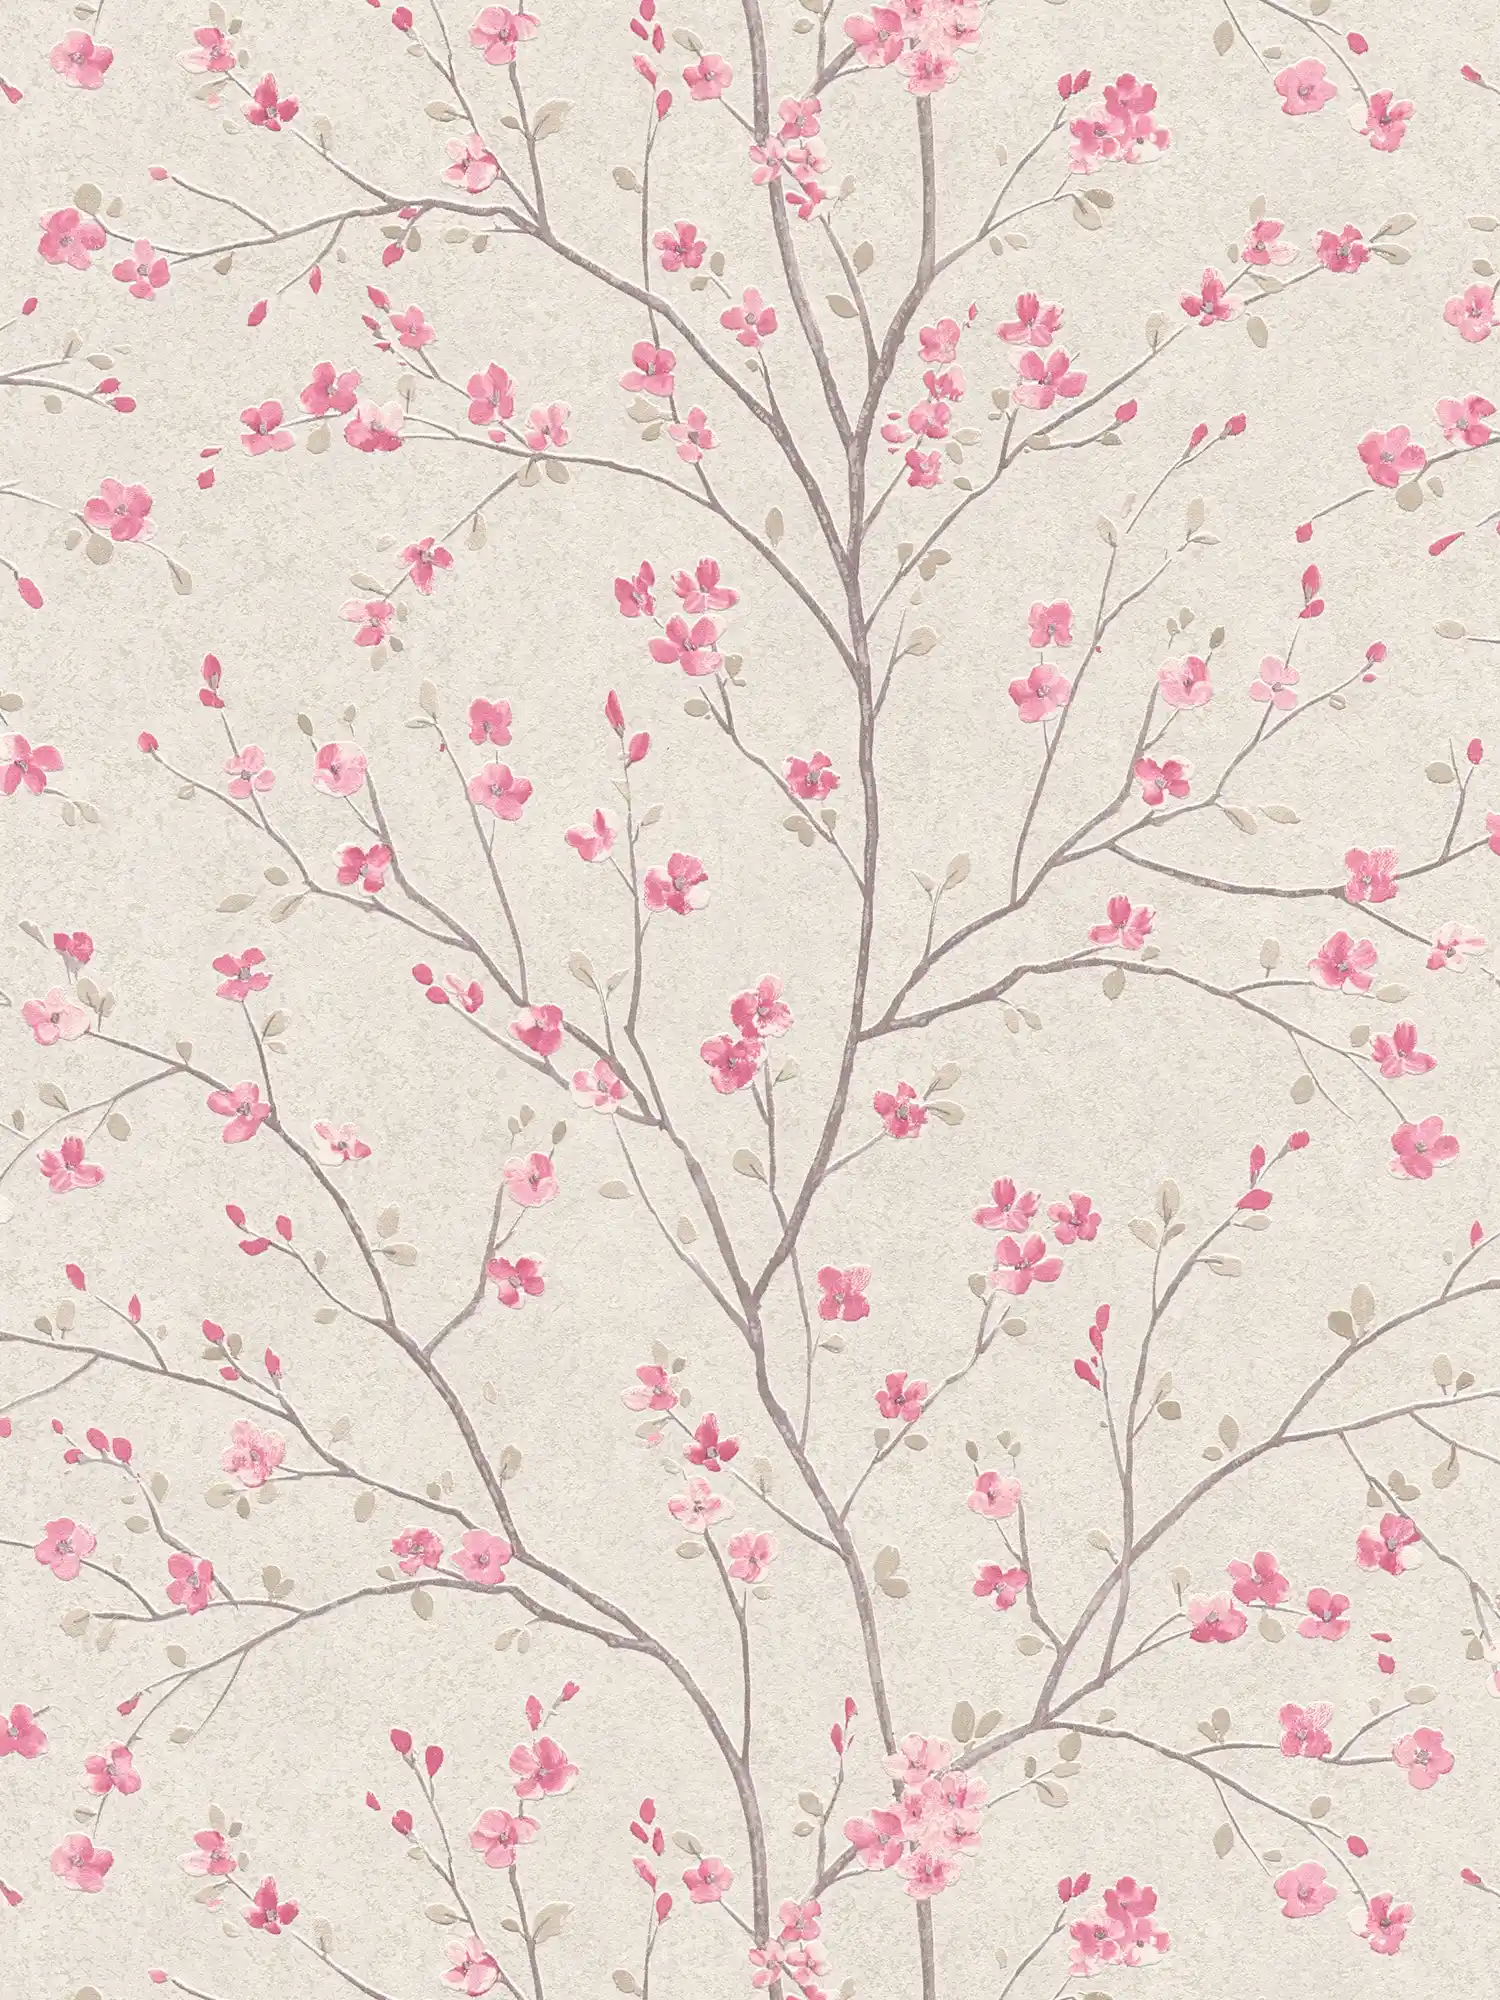         Vliestapete mit Kirschblüten Design im Asian Style – Braun, Rosa, Weiß
    